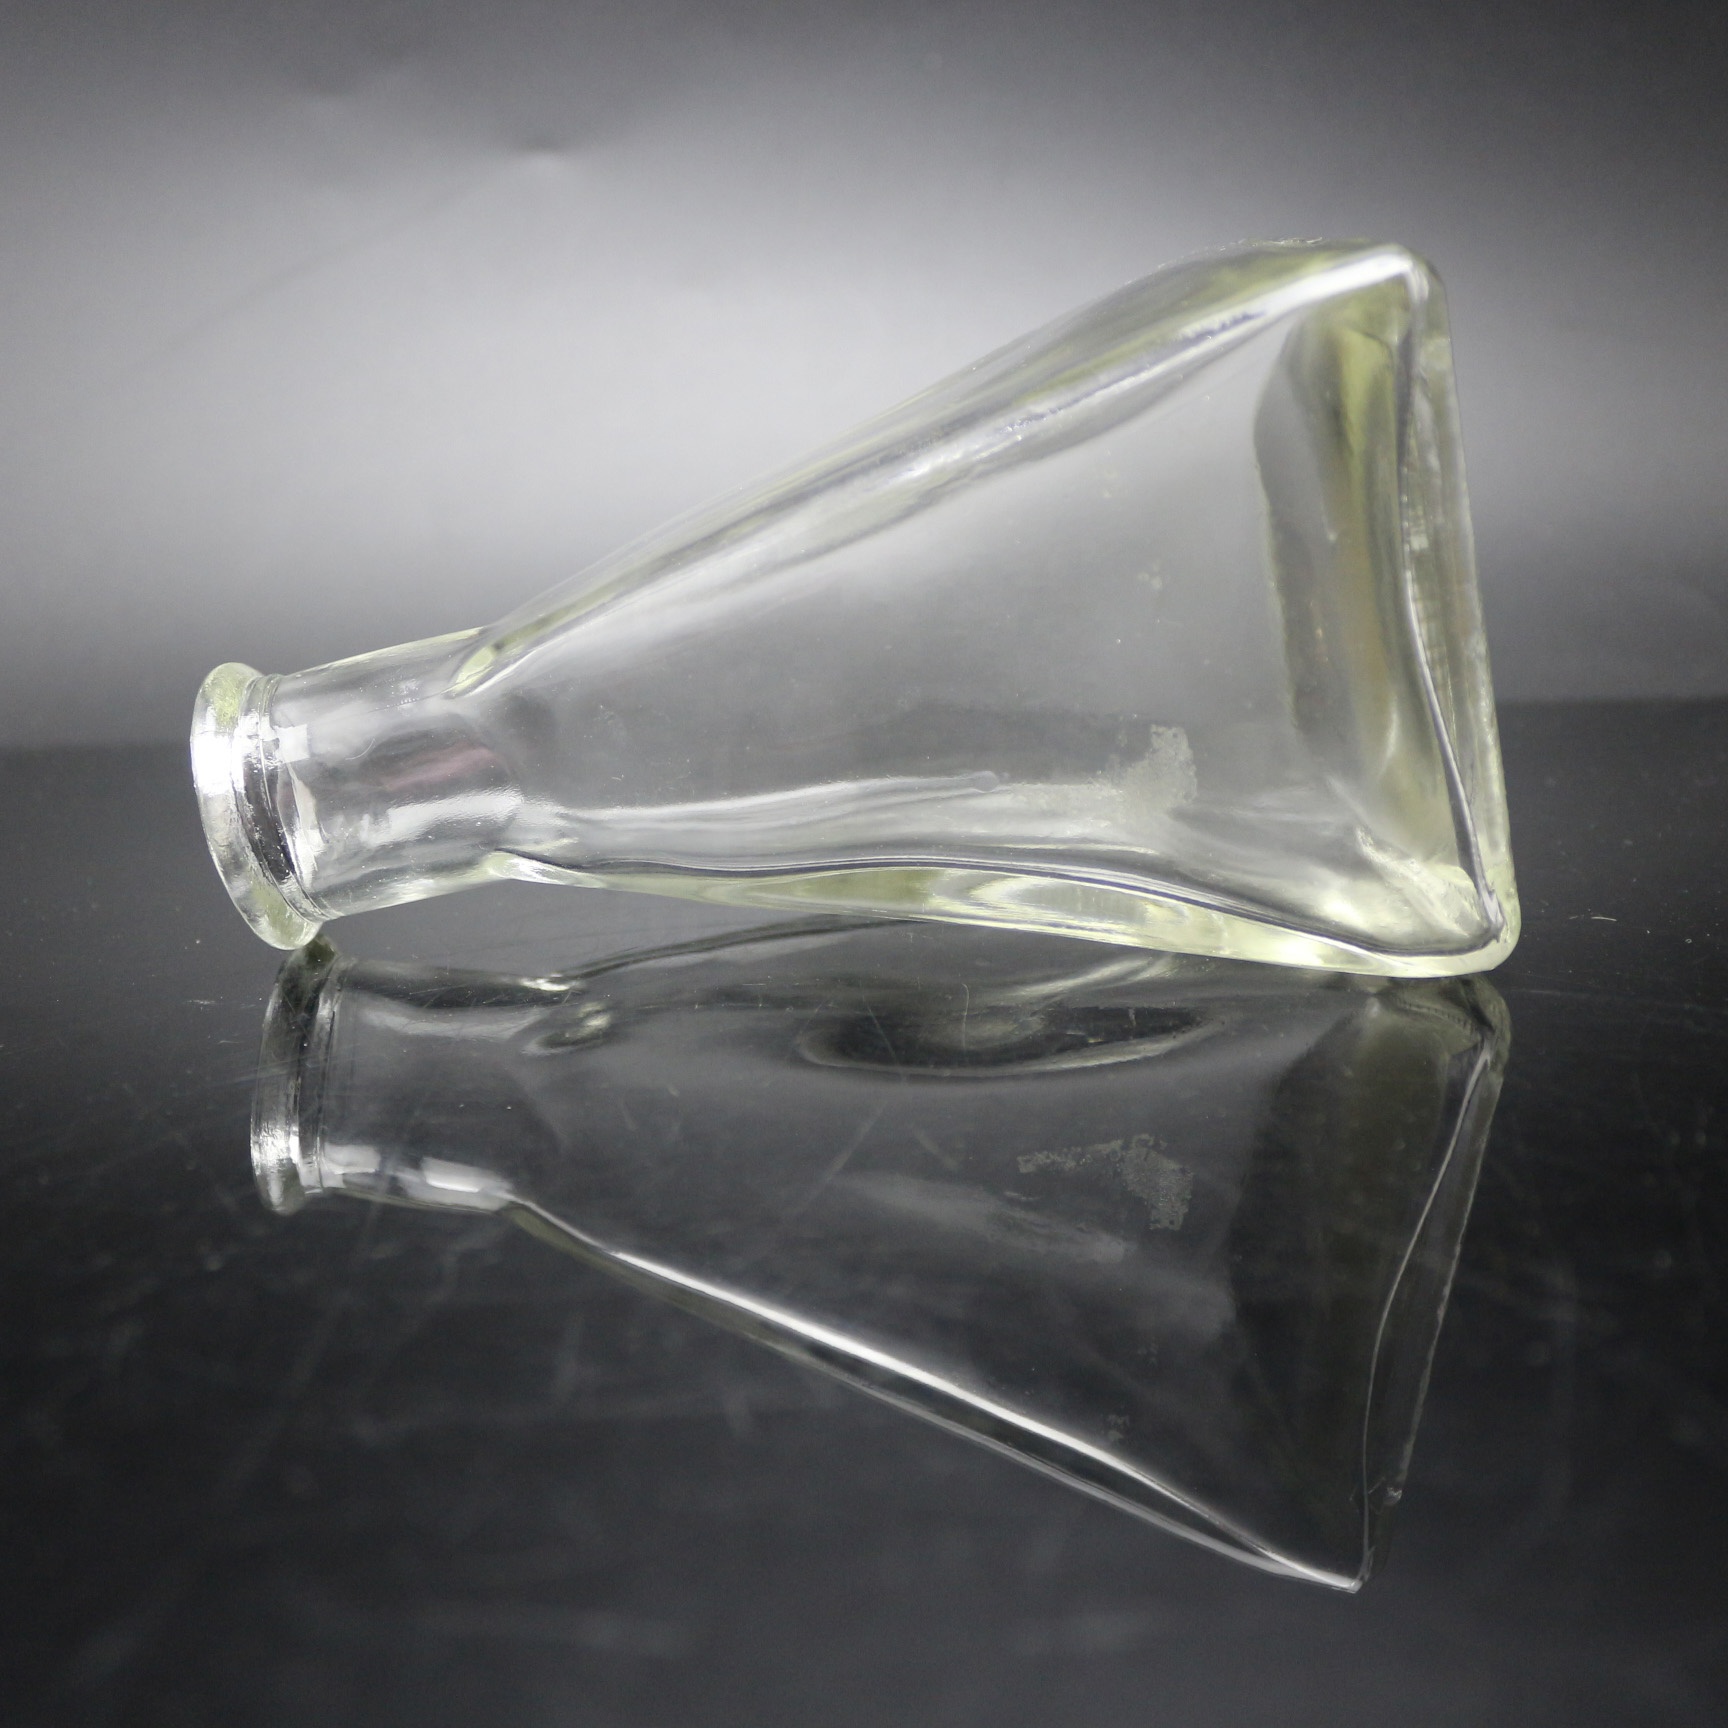 Fragrancia cana difusor aceite pirámide decorativo frasco de vidro en forma de pirámide botellas de vidro